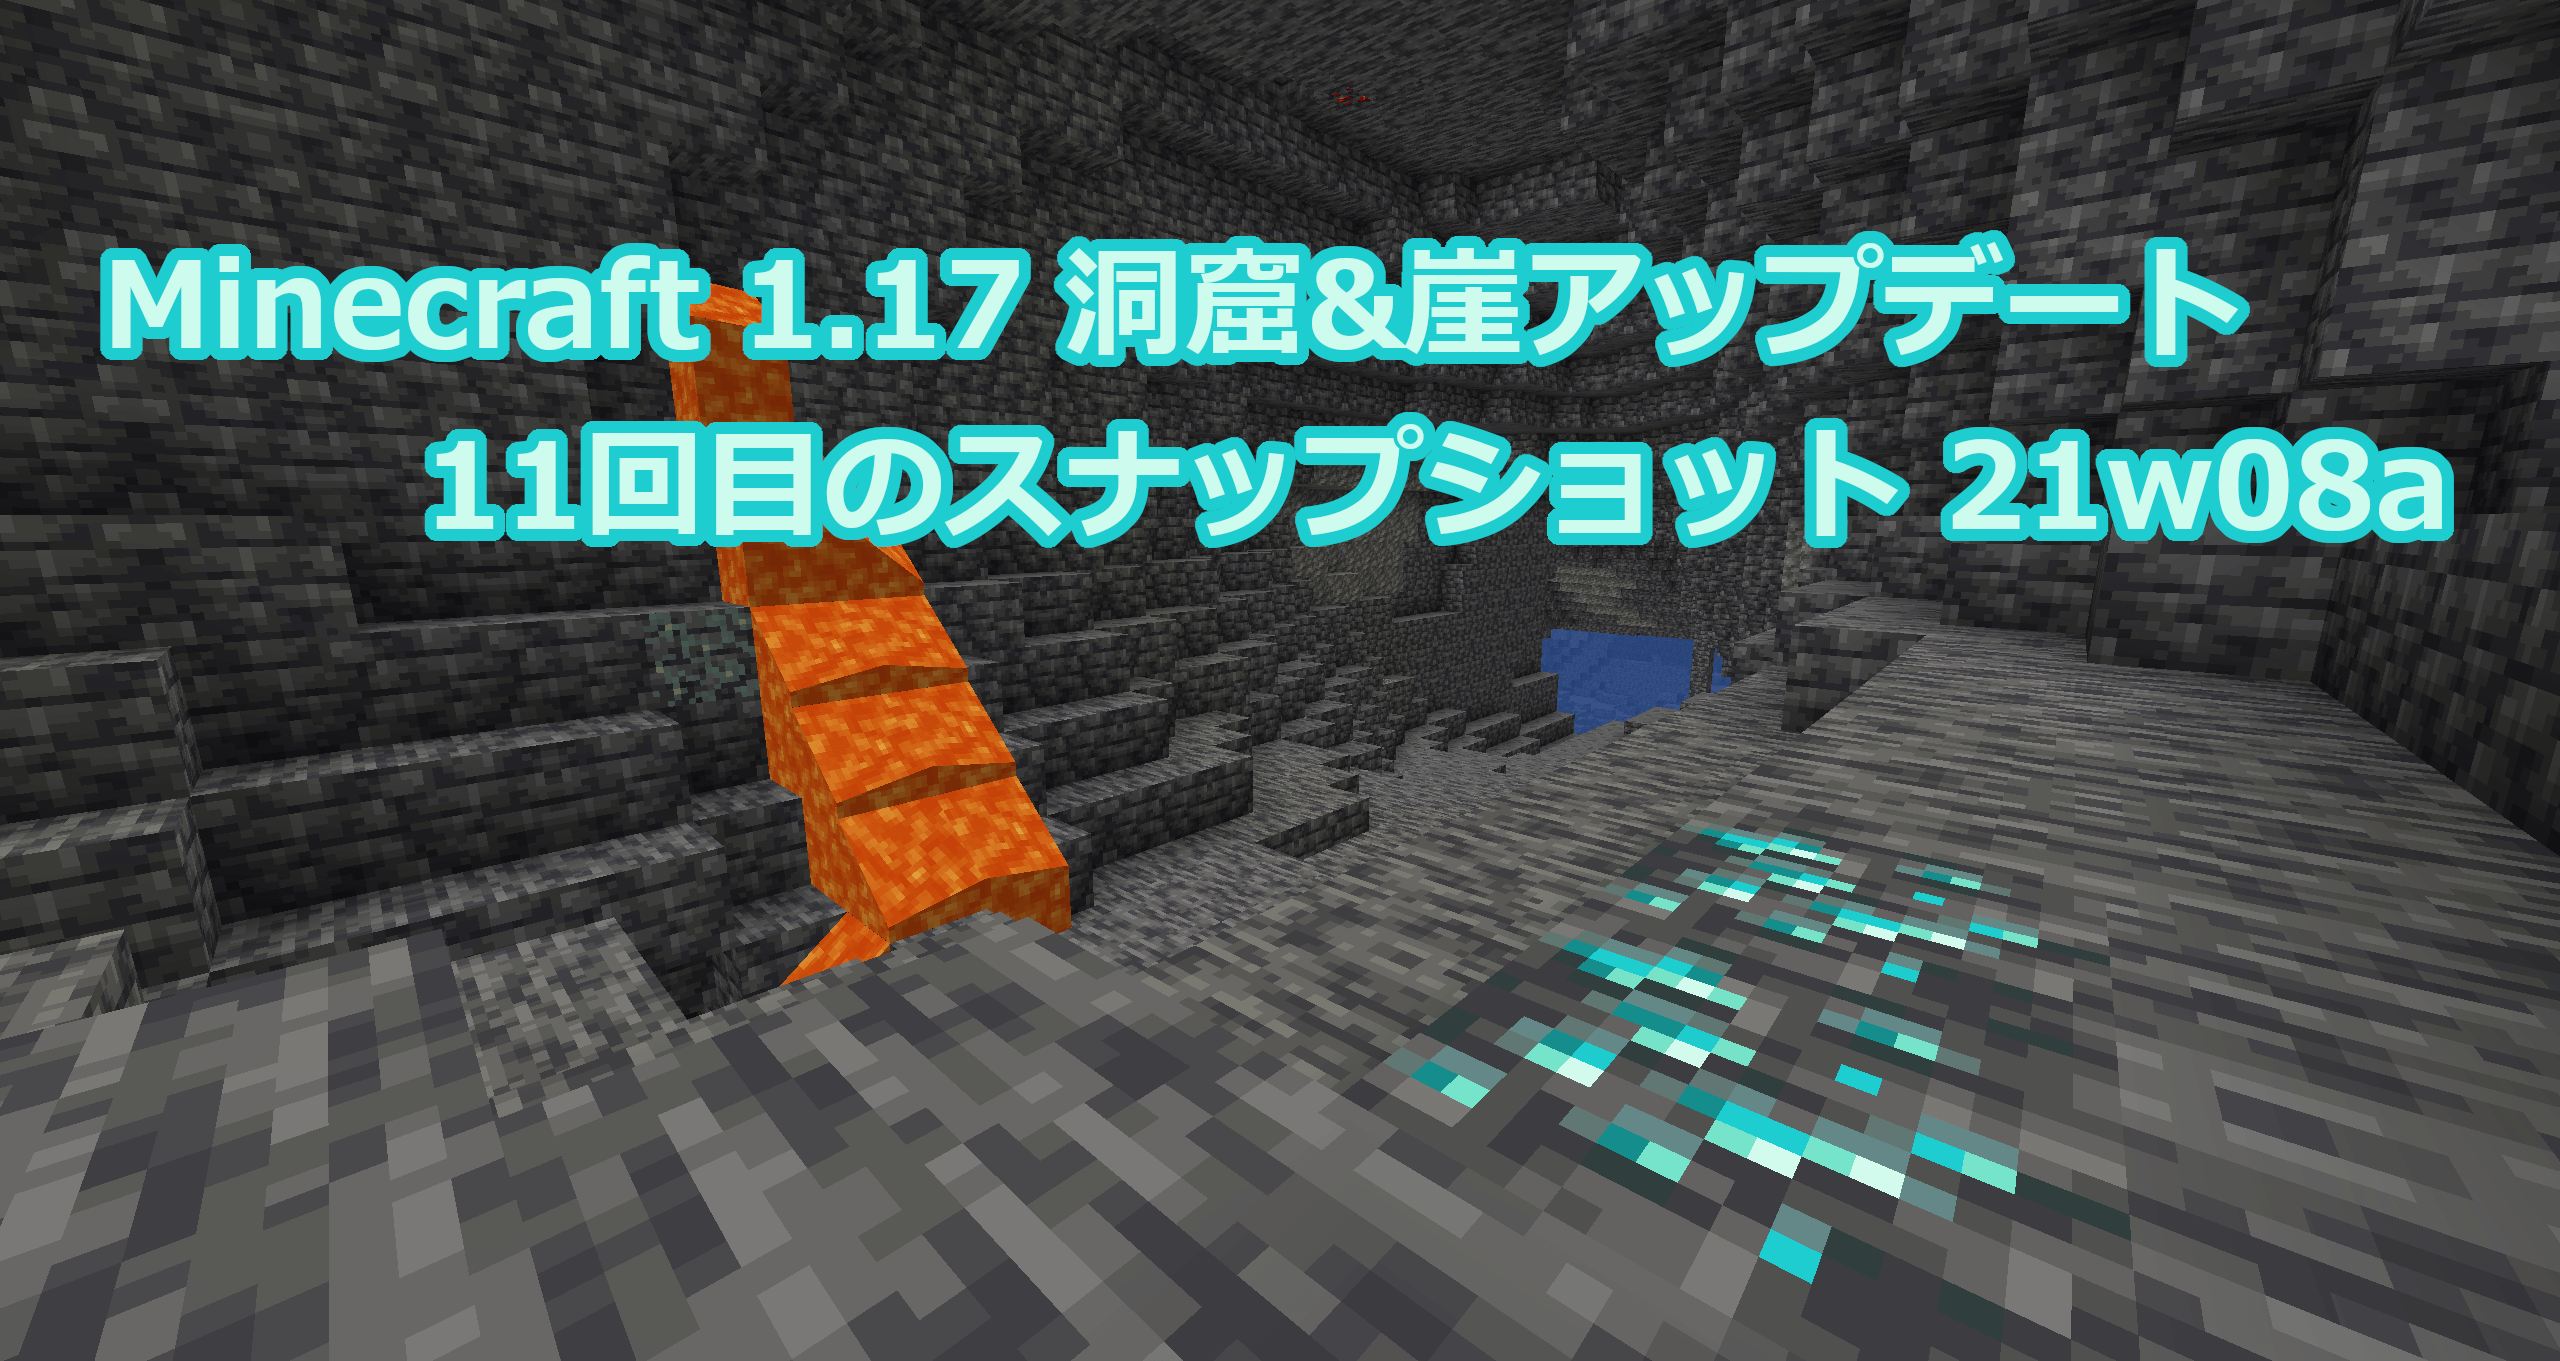 Minecraft 1 17 11回目のスナップショット21w08aリリース情報 鉱石の亜種追加と新しい洞窟生成アルゴリズム追加 まいん くらふと みっくすじゅーす